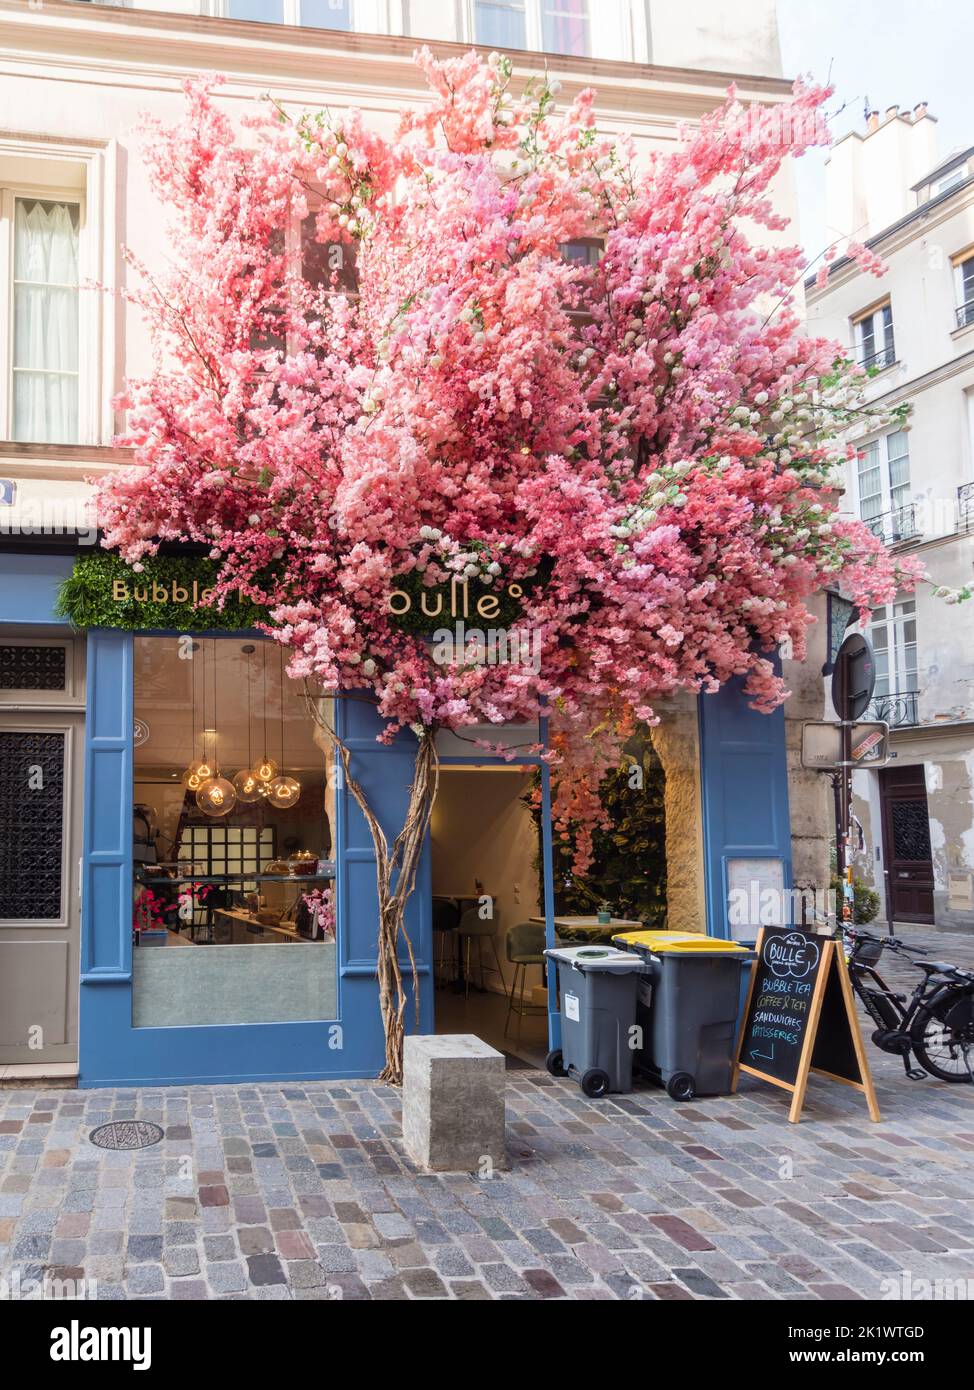 Blumenbedecktes Straßencafé Bulle im 4.. Arrondissement von Paris Stockfoto